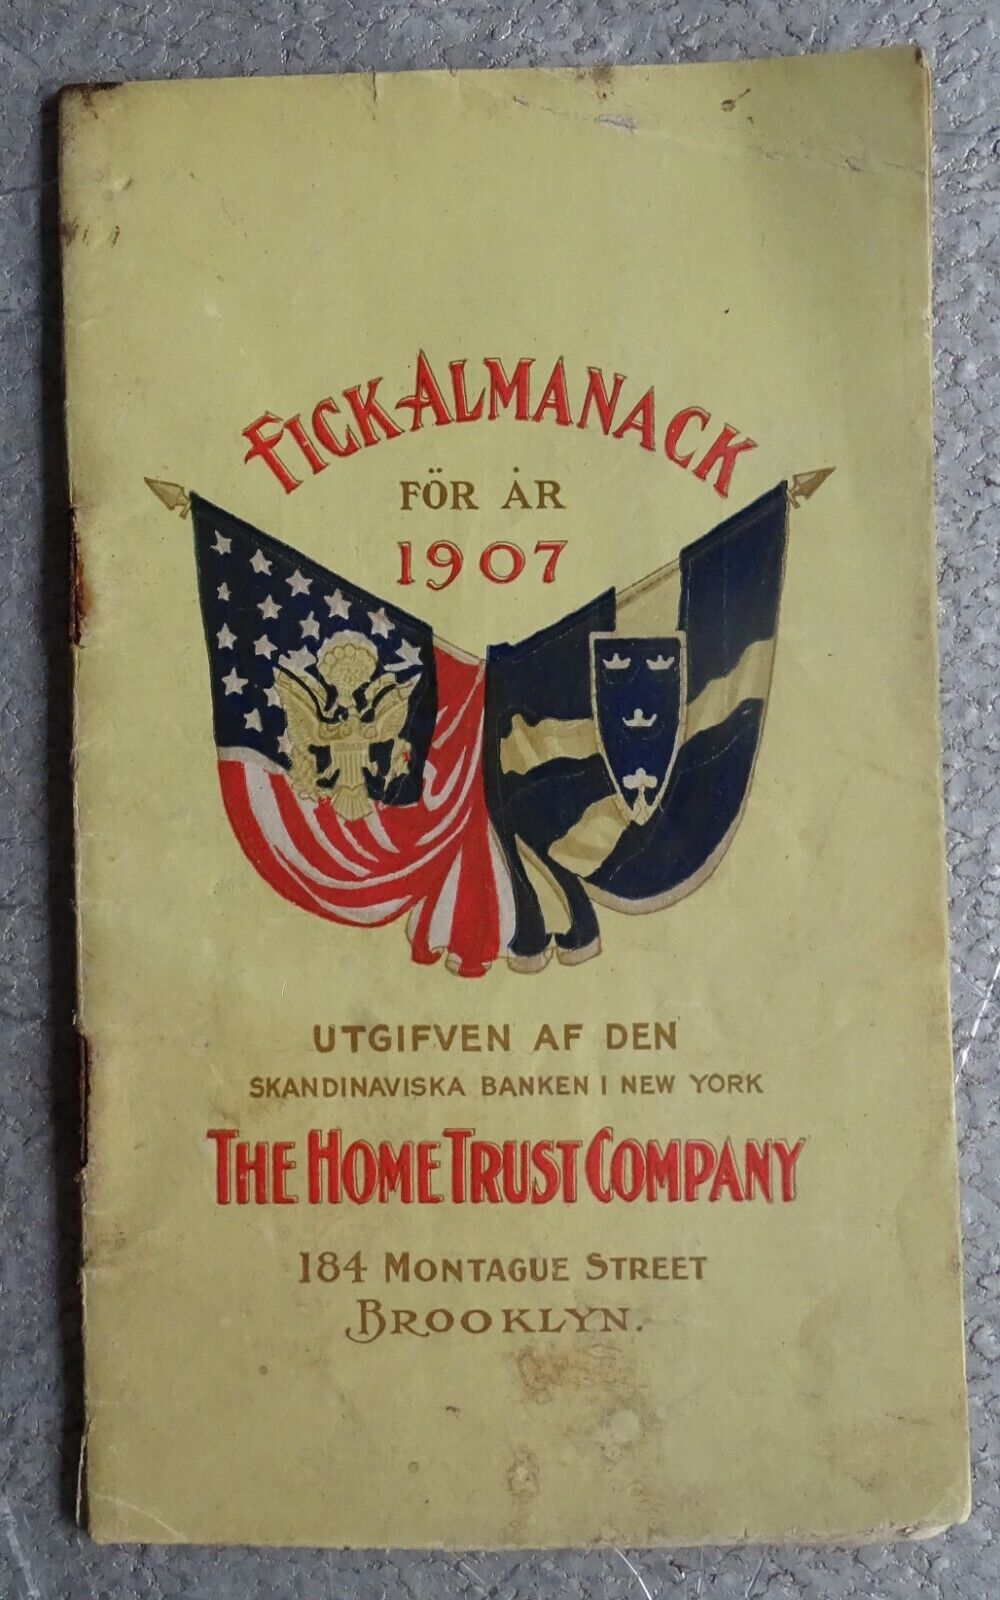 1907 Fick Almanack - The Home Trust Company Brooklyn NY